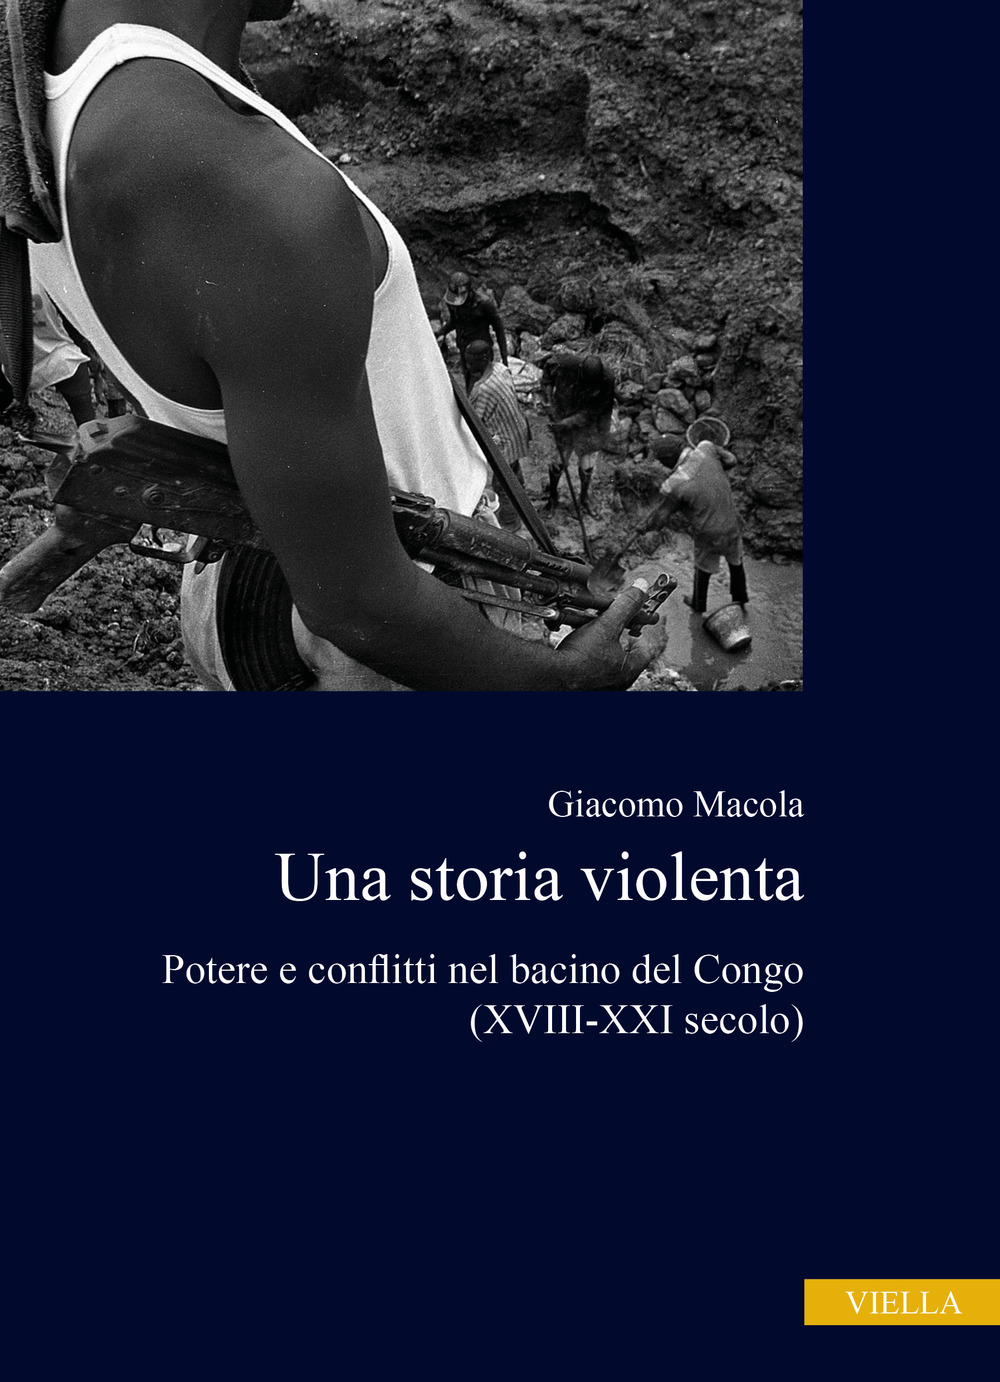 Una storia violenta. Potere e conflitti nel bacino del Congo (XVIII-XXI secolo)